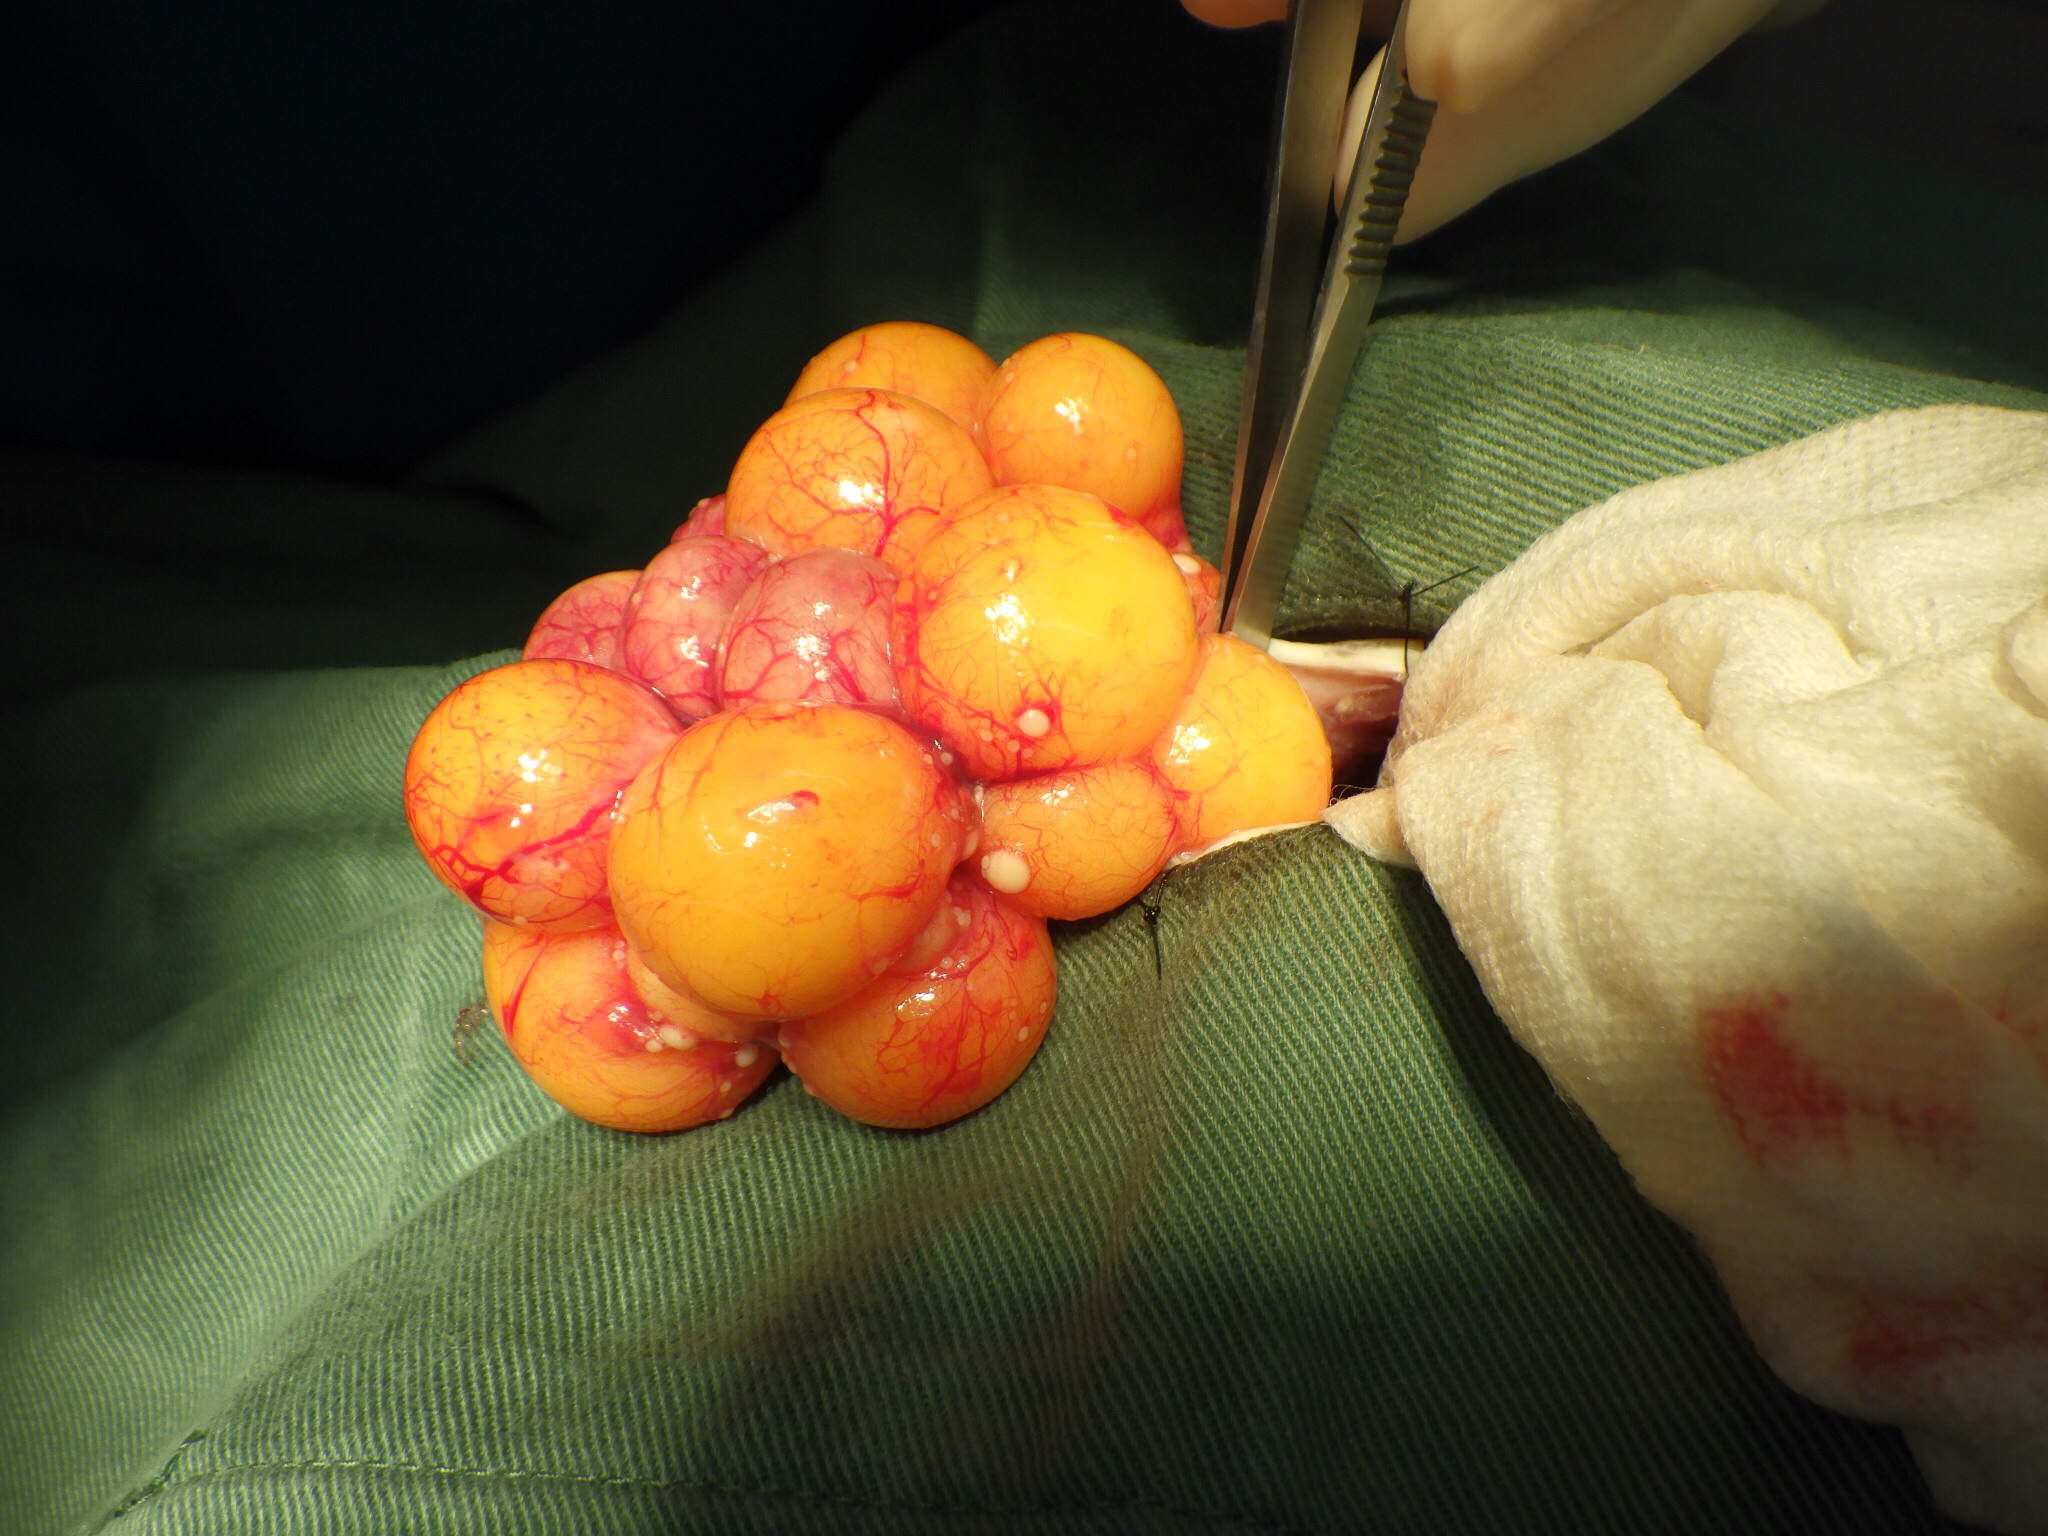 亀の卵づまり 卵巣卵管摘出 コネット動物病院のブログ